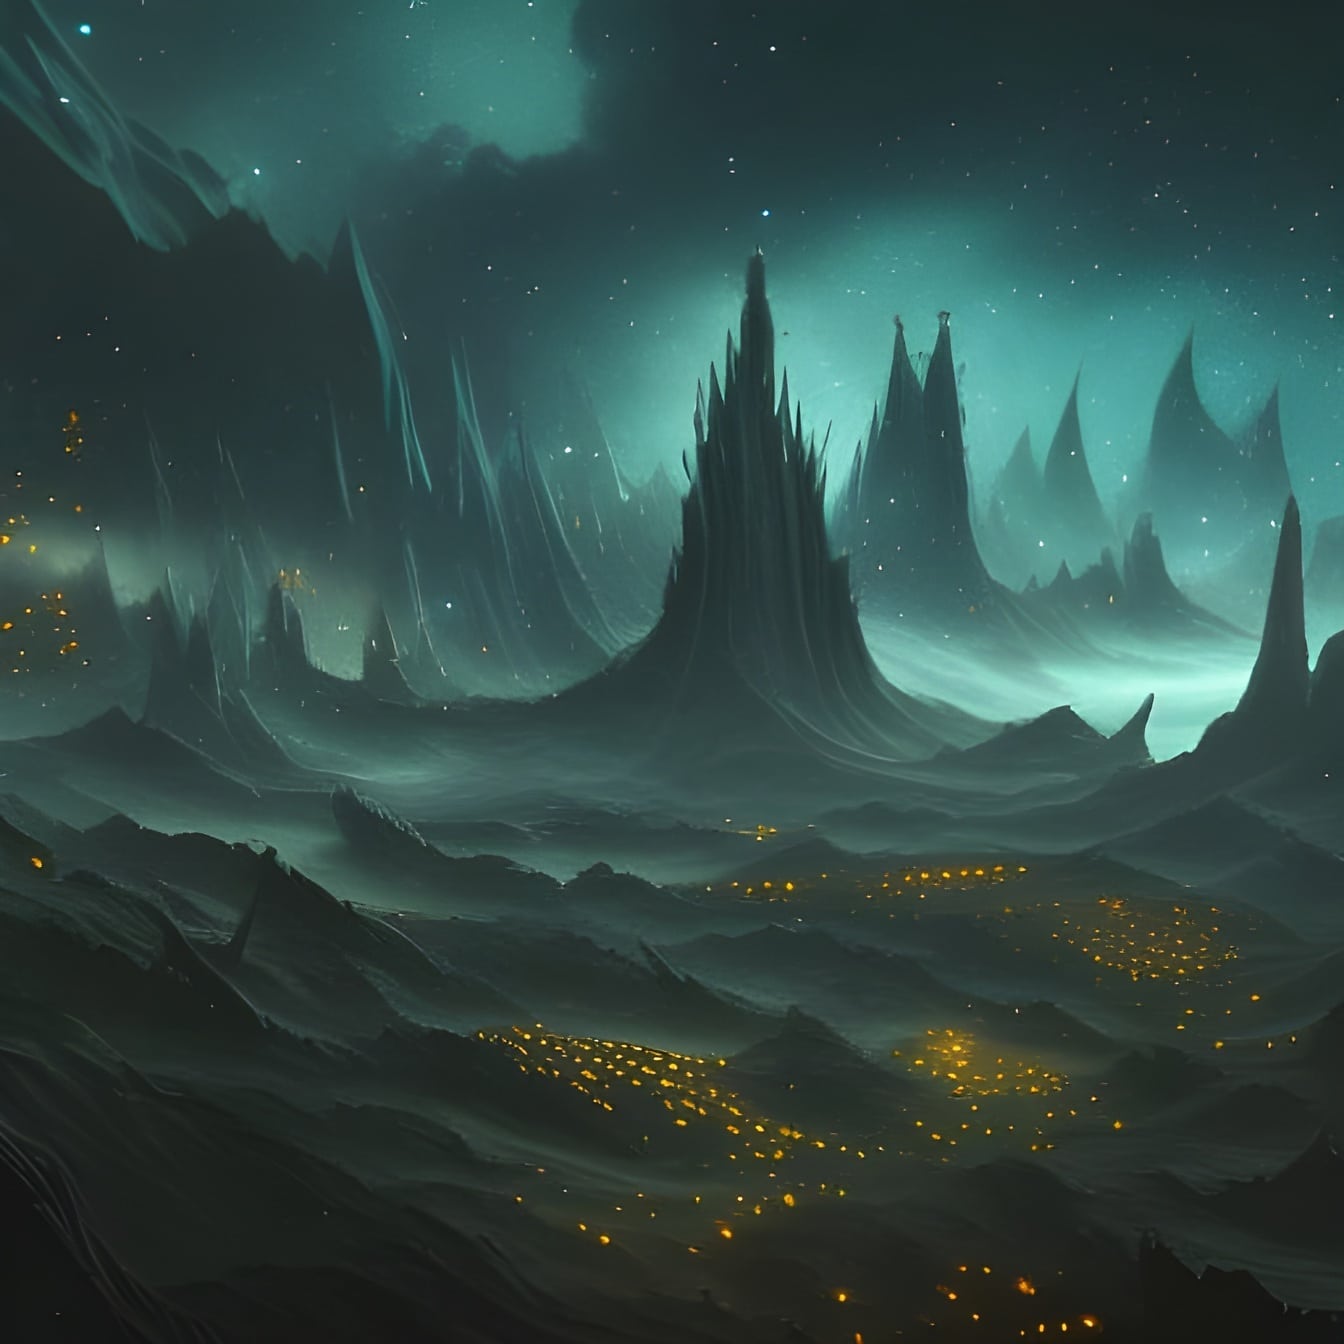 Mørkegrøn himmel på fantasiplanet futuristisk illustration